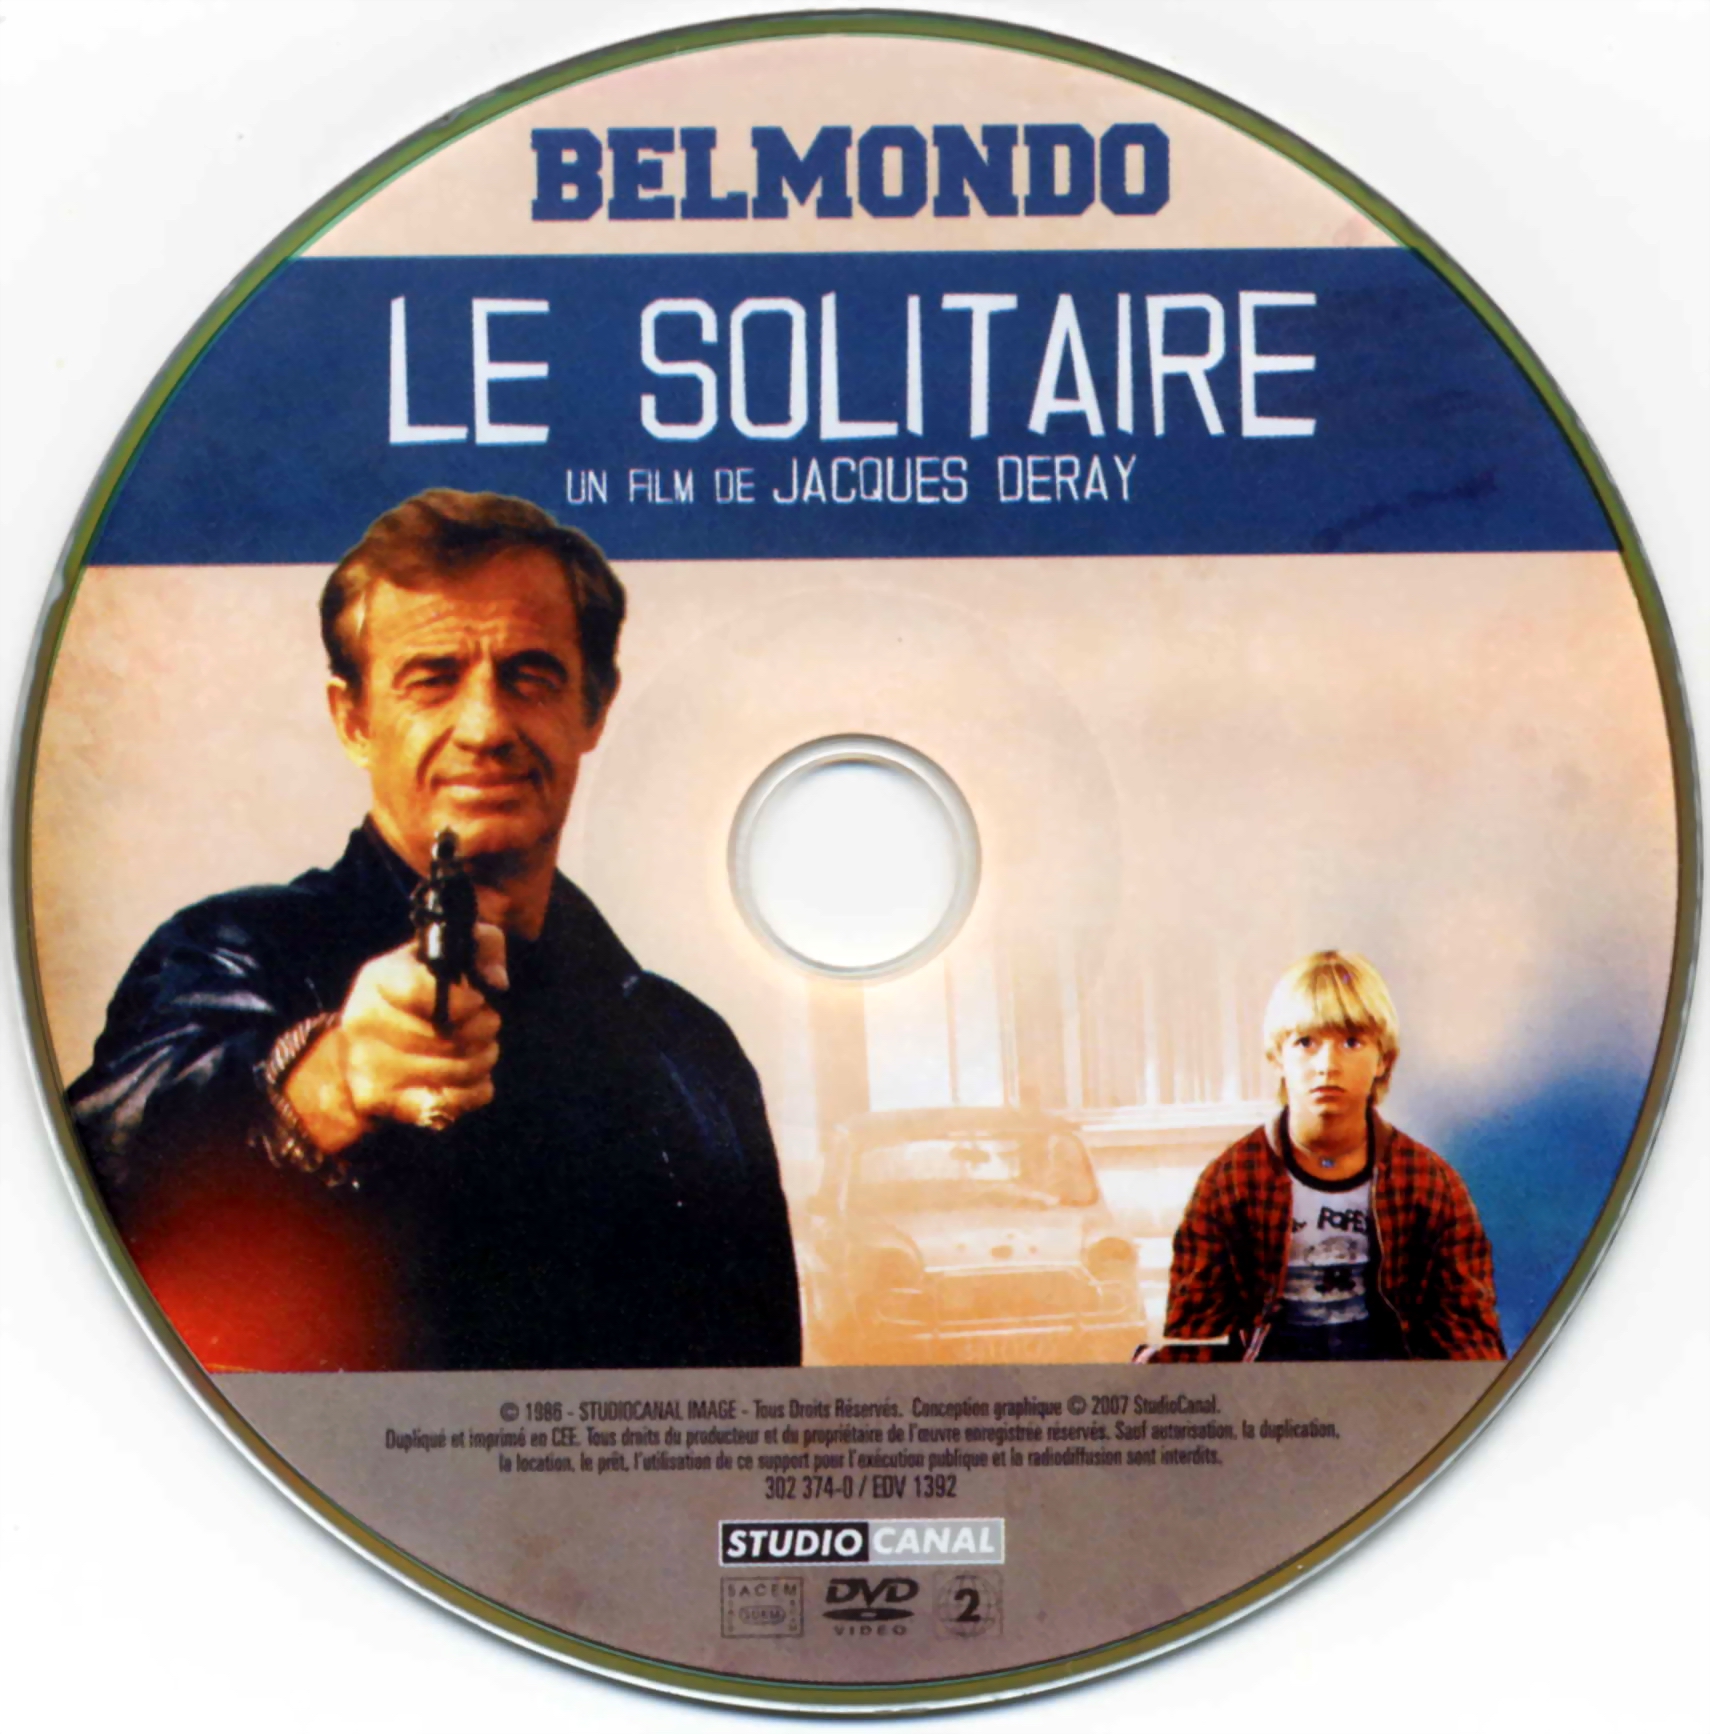 Le solitaire (Belmondo)